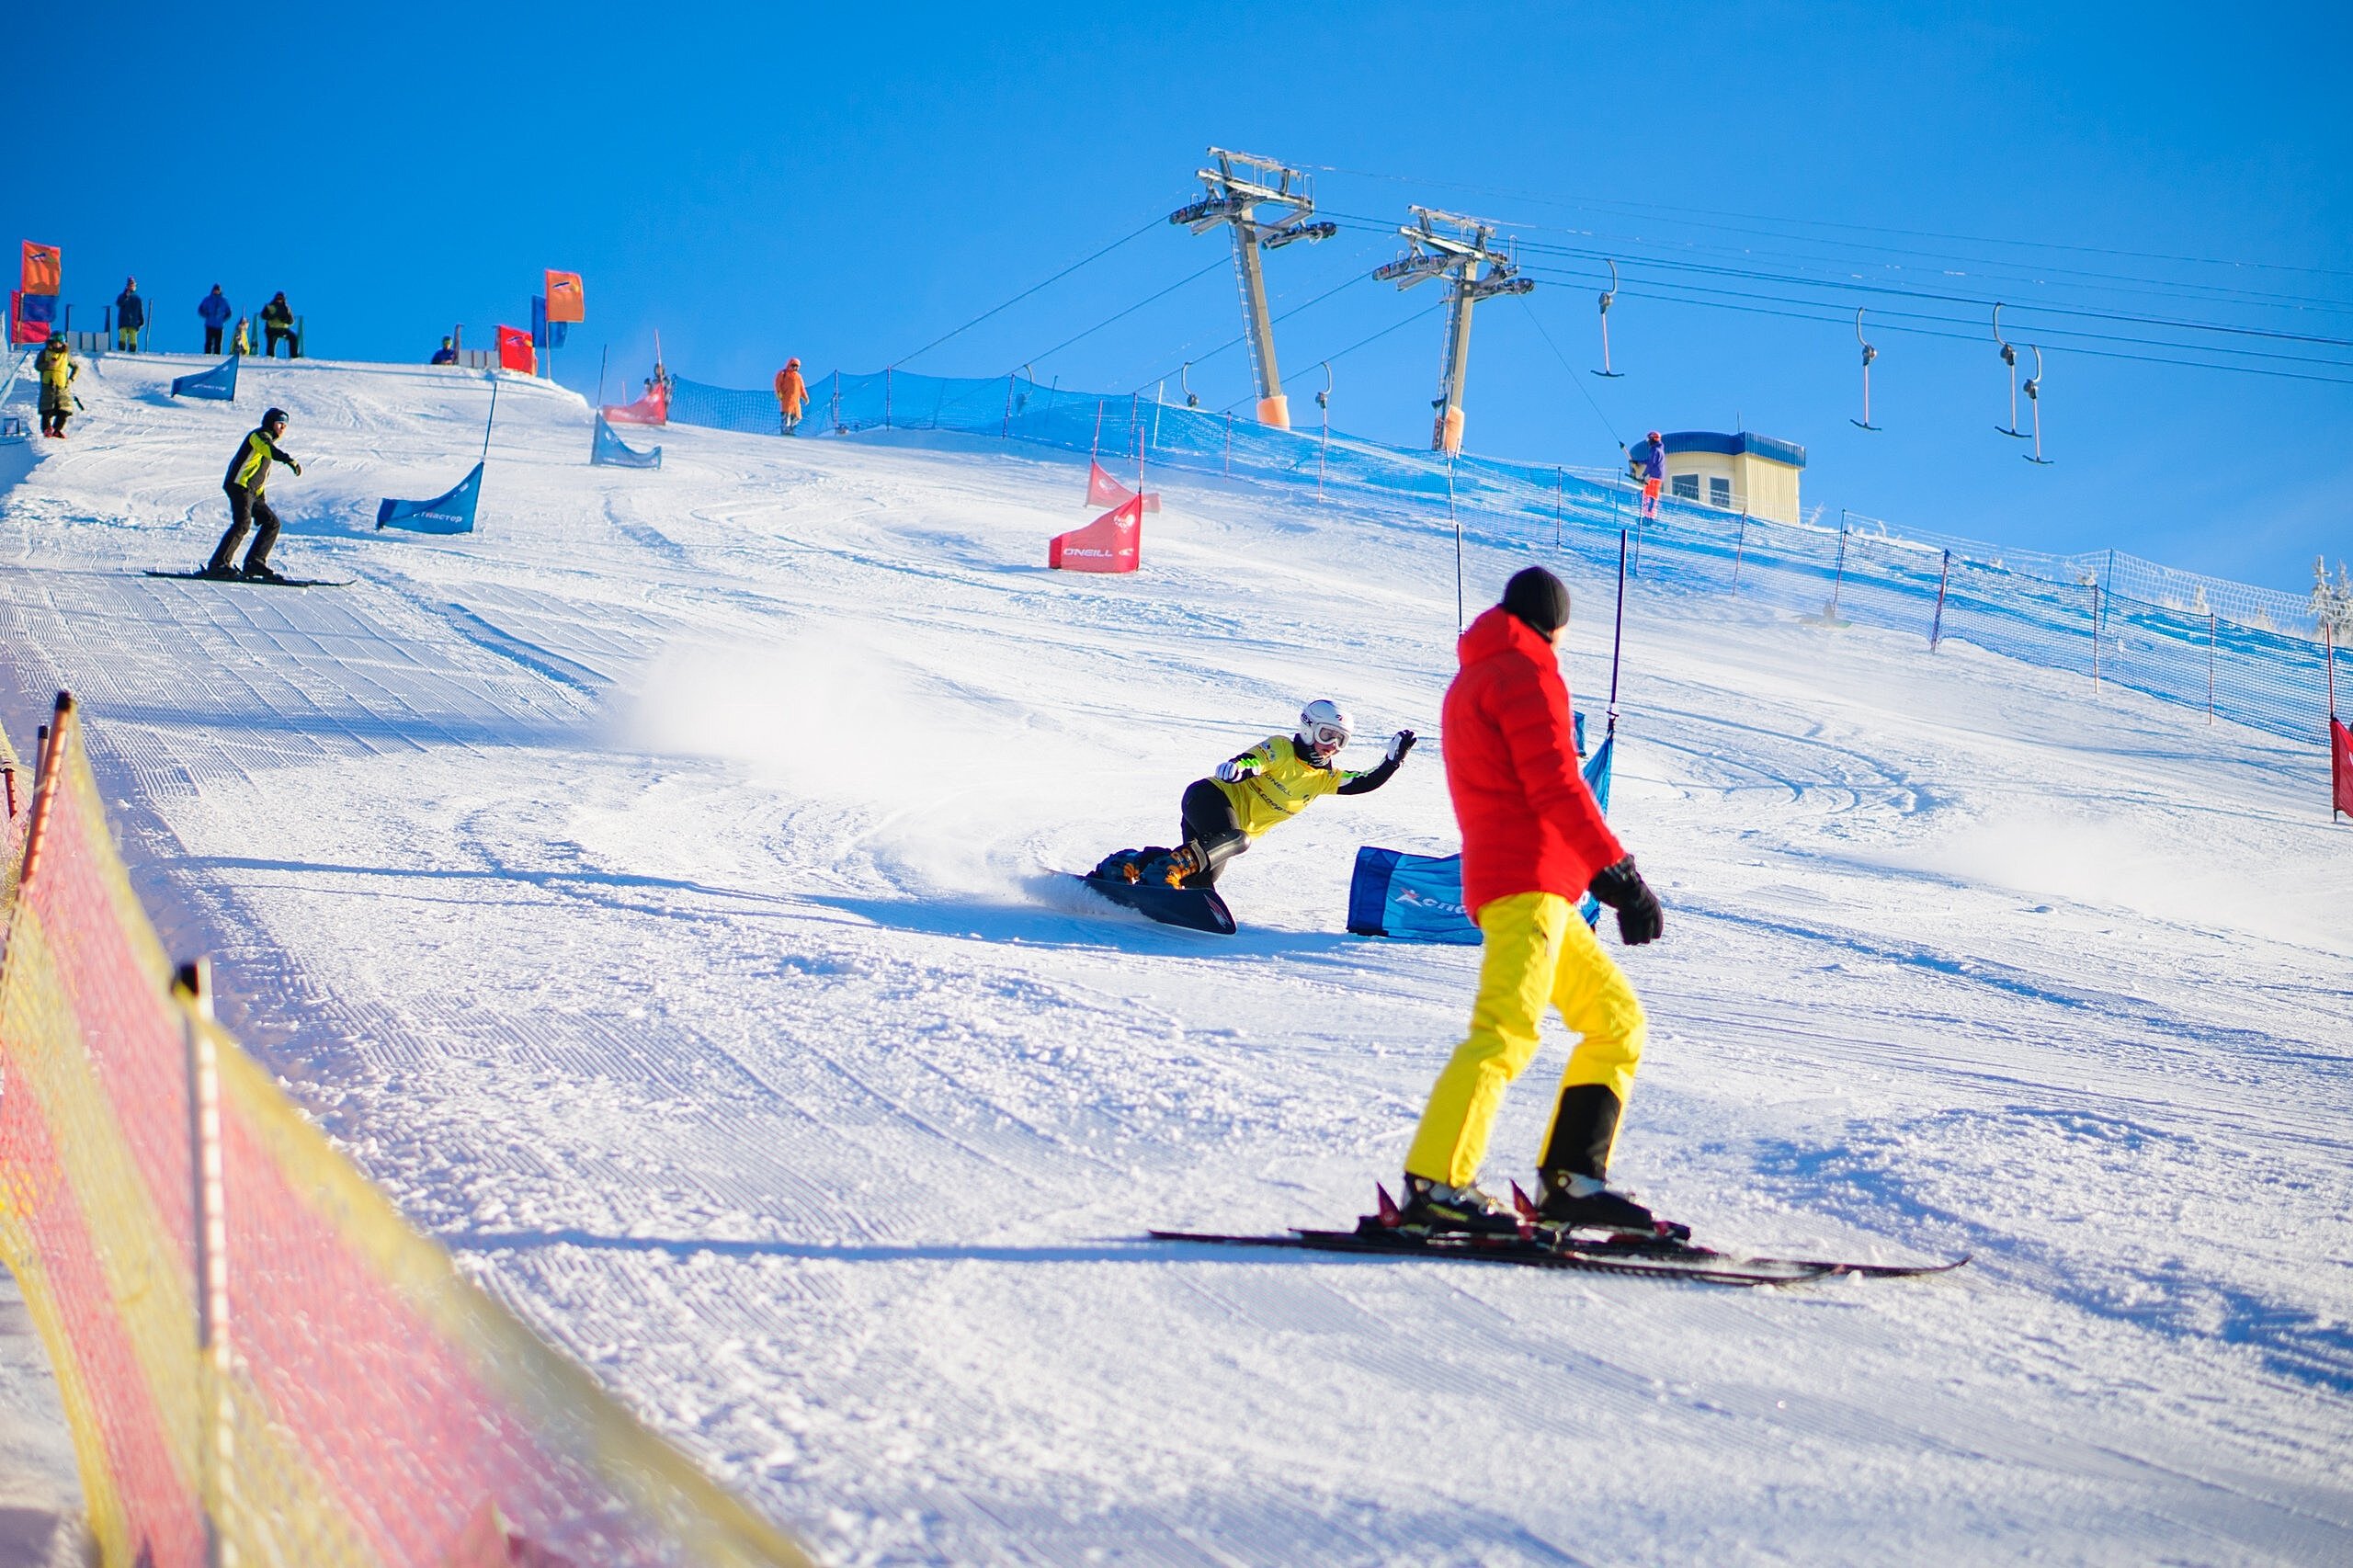 Курорт «Чекерил» в Удмуртии вошел в топ-10 самых популярных мест России для сноубординга